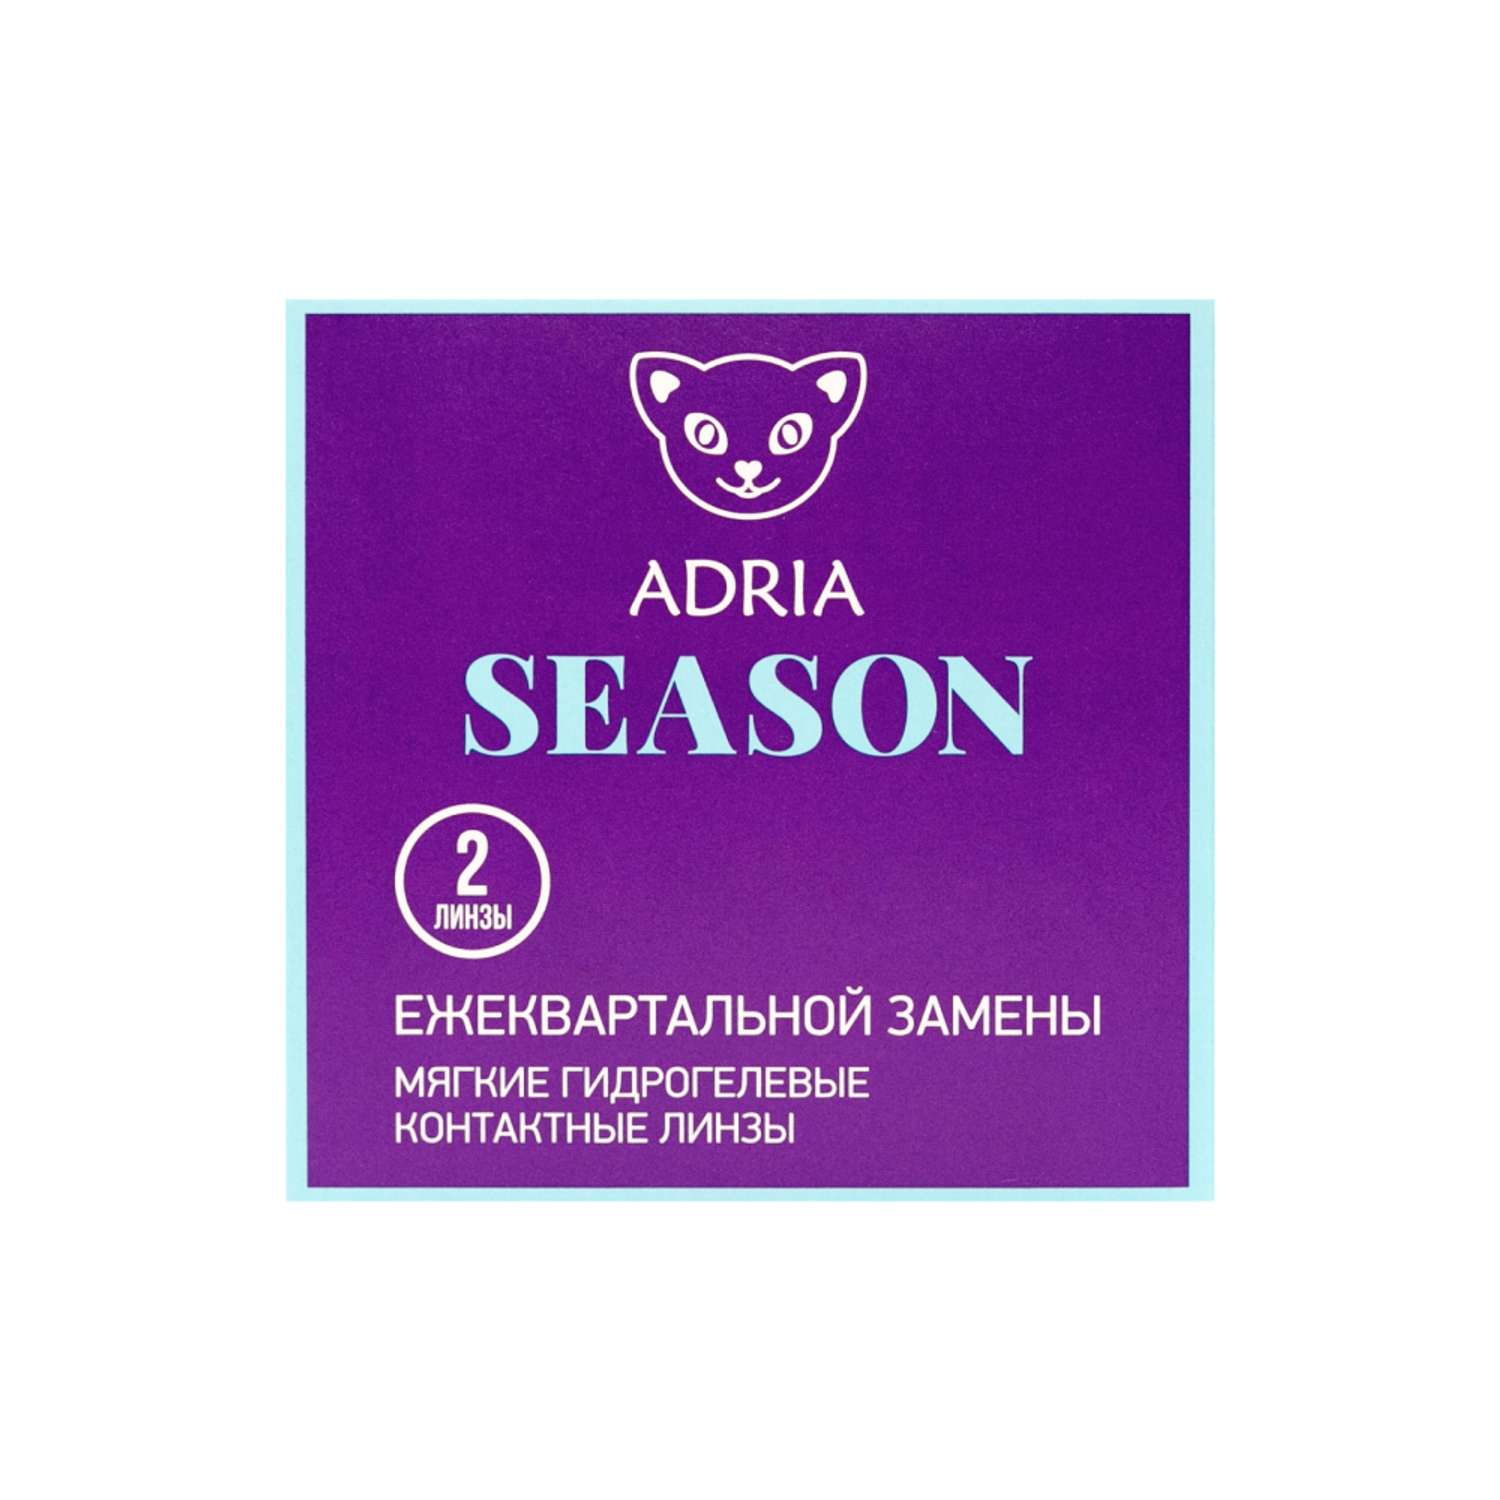 Контактные линзы ADRIA Season 2 линзы R 8.6 -3.50 - фото 6